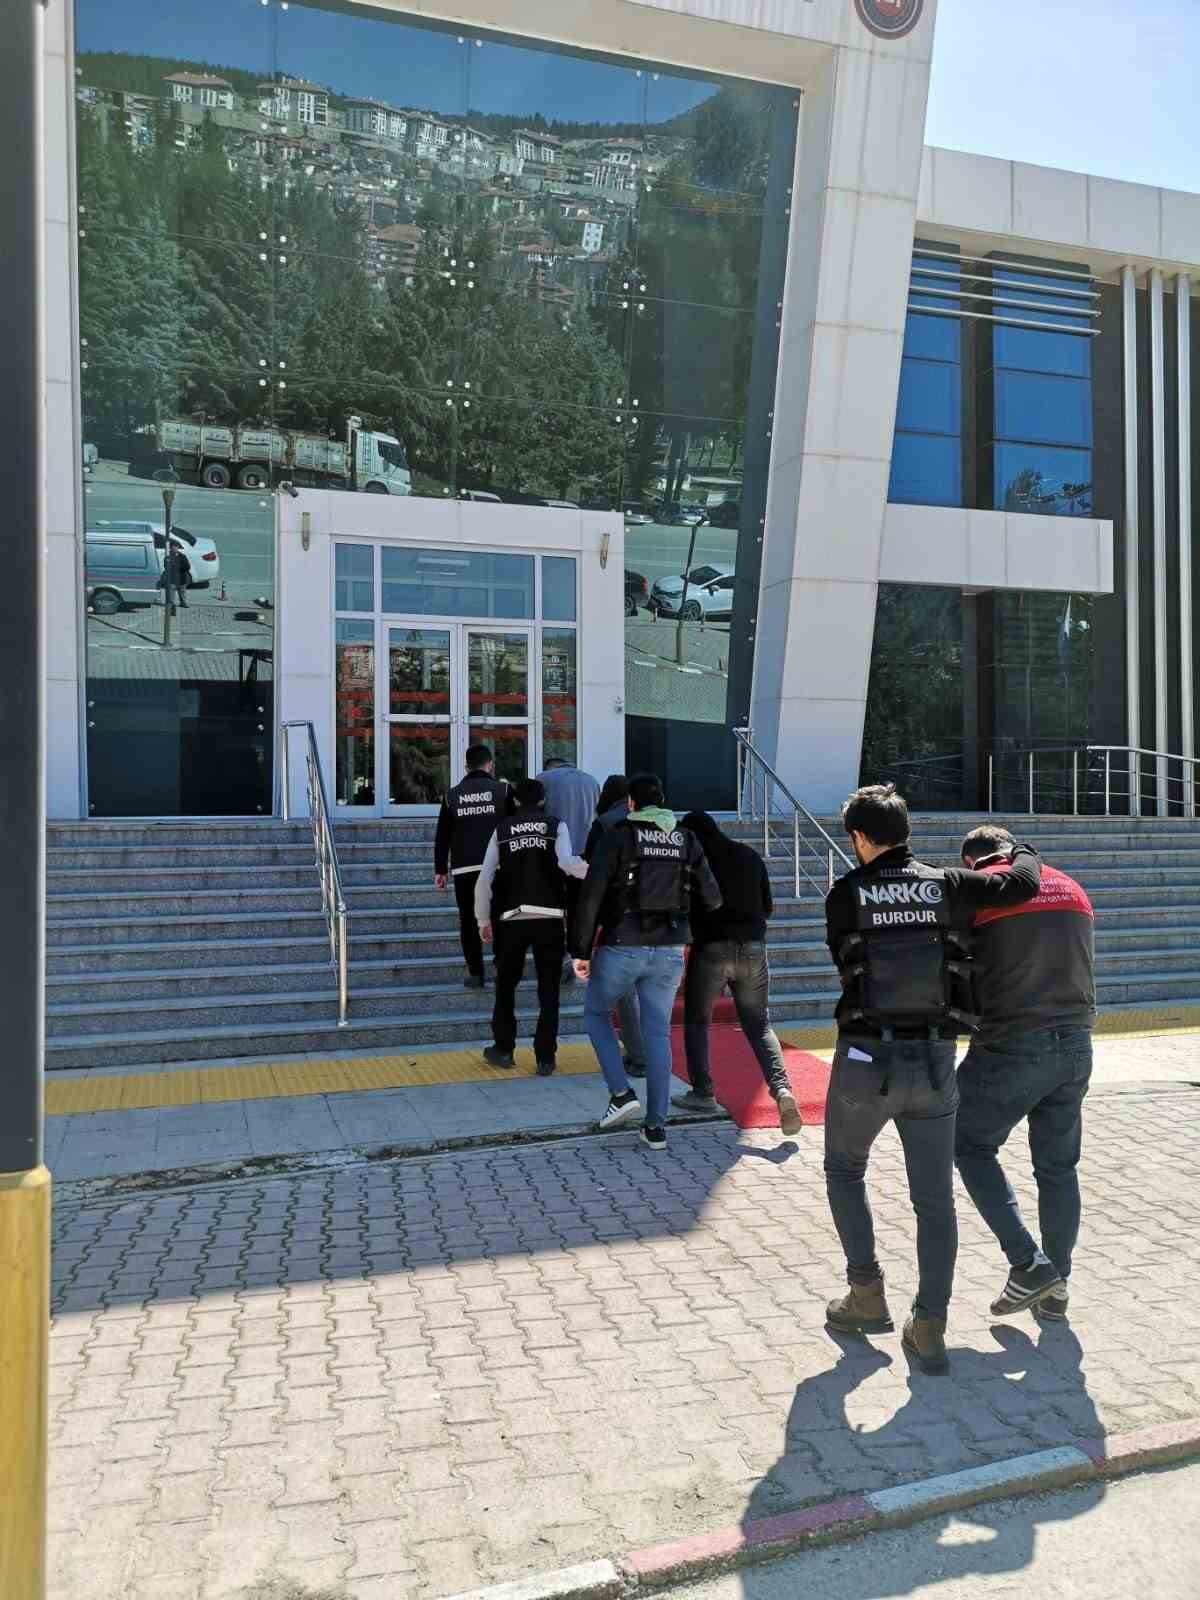 Burdur’da iki çekiciden uyuşturucu çıktı, 4 şahıs tutuklandı
